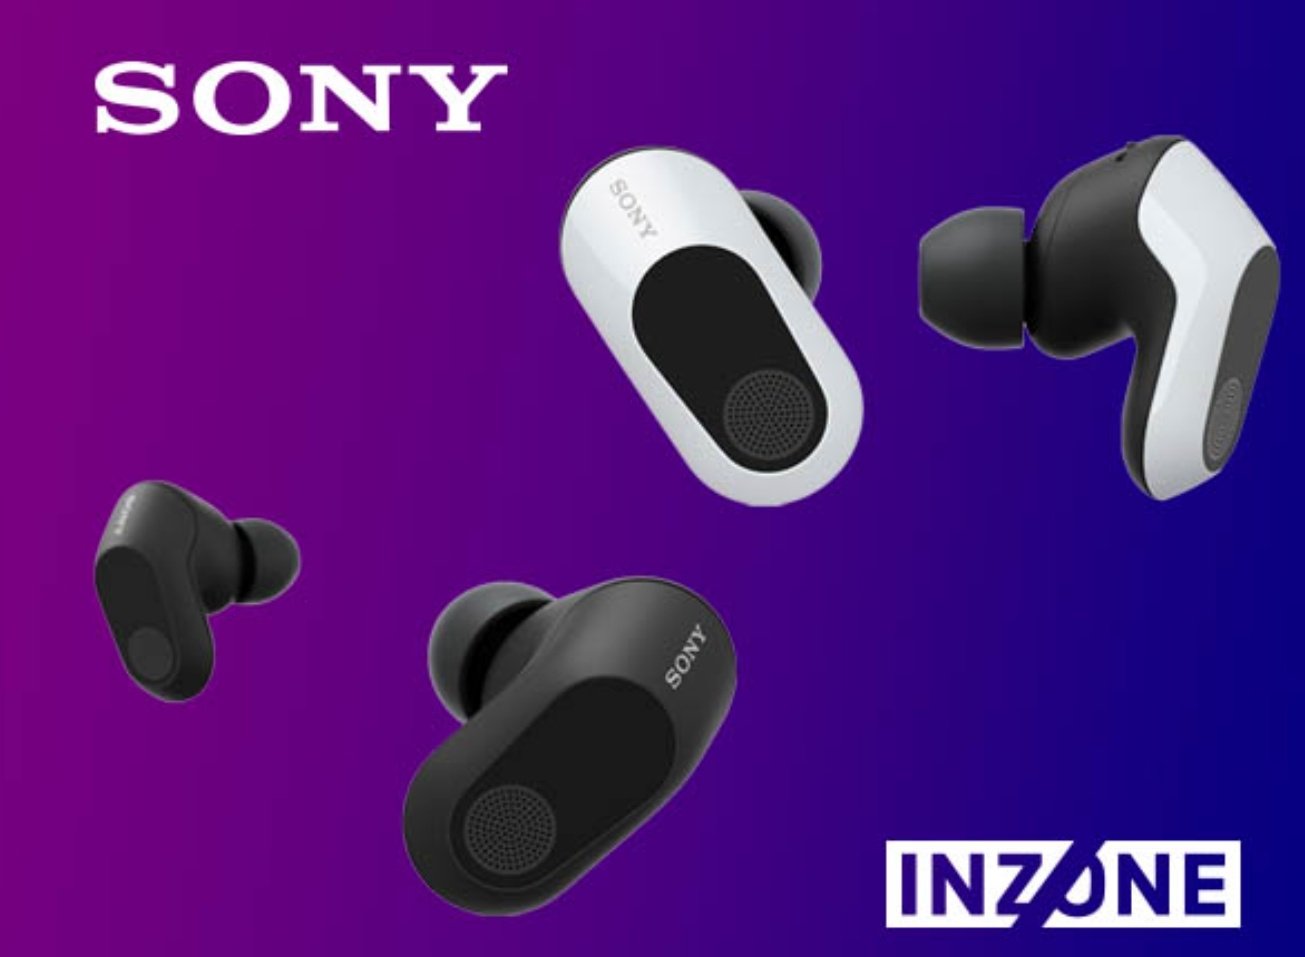 Sony Inzone Buds review - Uitstekend geluid met enkele kanttekeningen